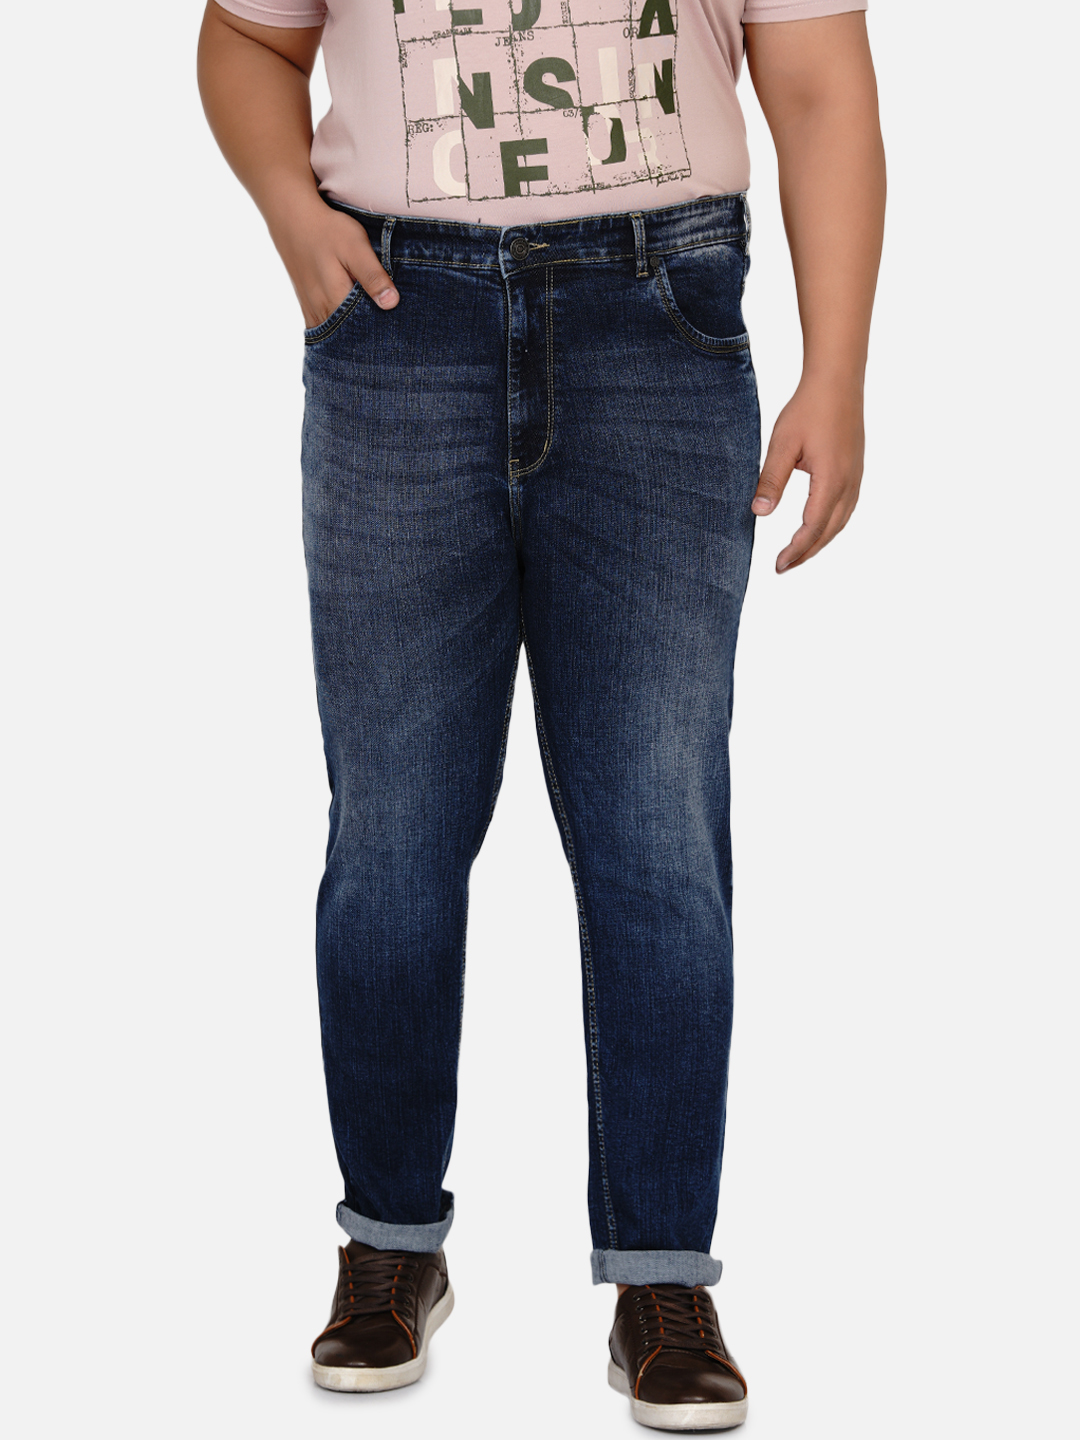 affordables/jeans/EJPJ2031/ejpj2031-3.jpg